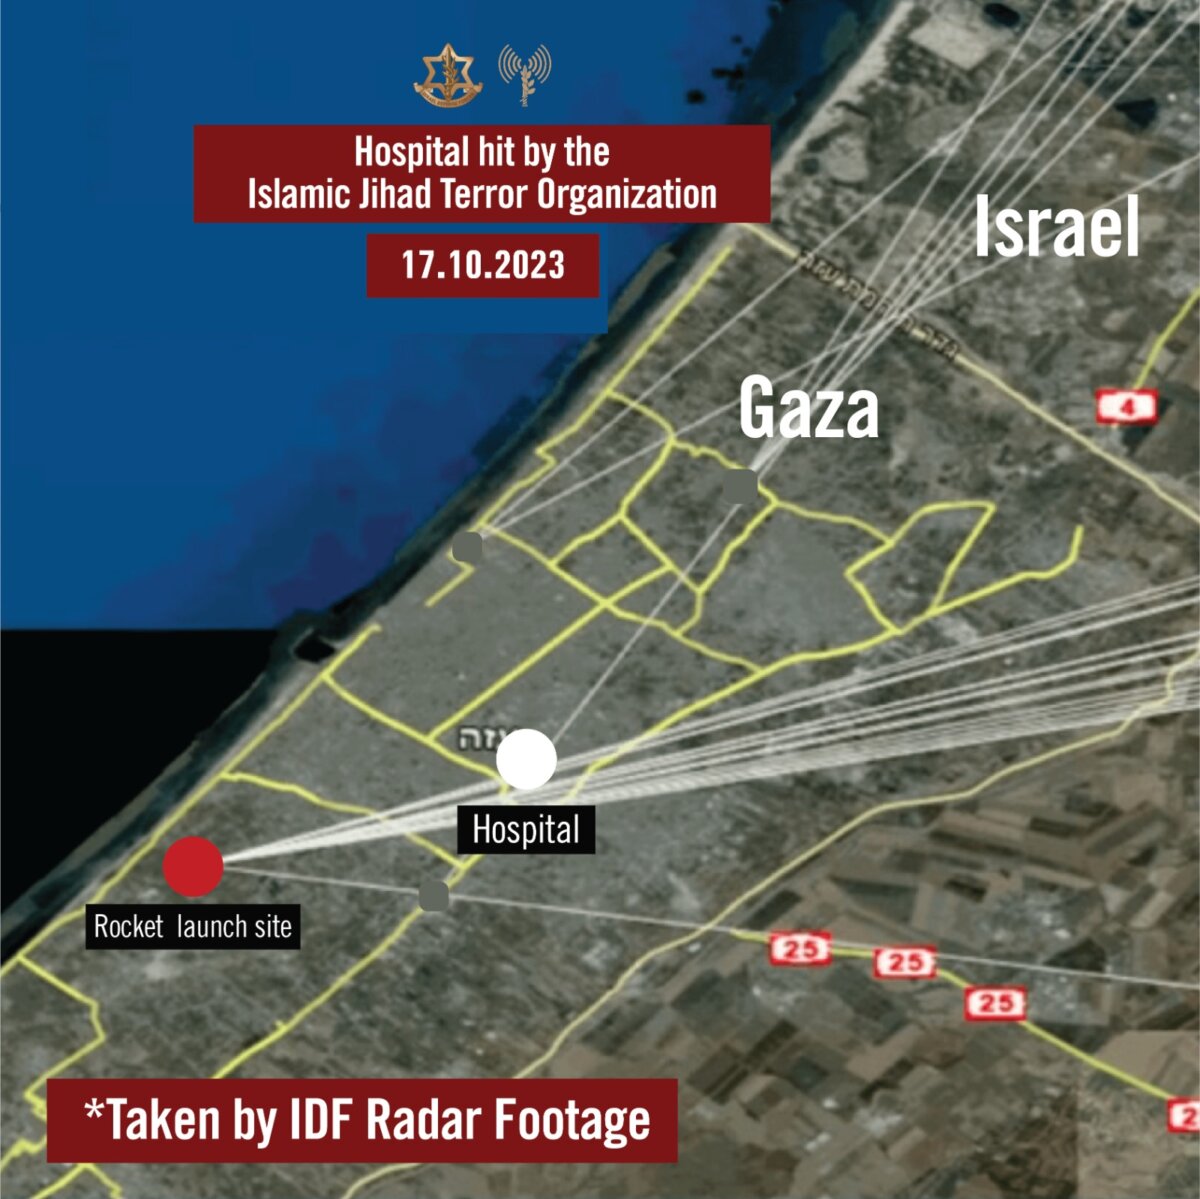 Hình ảnh do quân đội Israel cung cấp cho thấy quỹ đạo của nhiều hỏa tiễn nhắm vào Israel, trong đó bệnh viện al-Ahli nằm trong tầm bắn trực tiếp. (Ảnh: IDF)